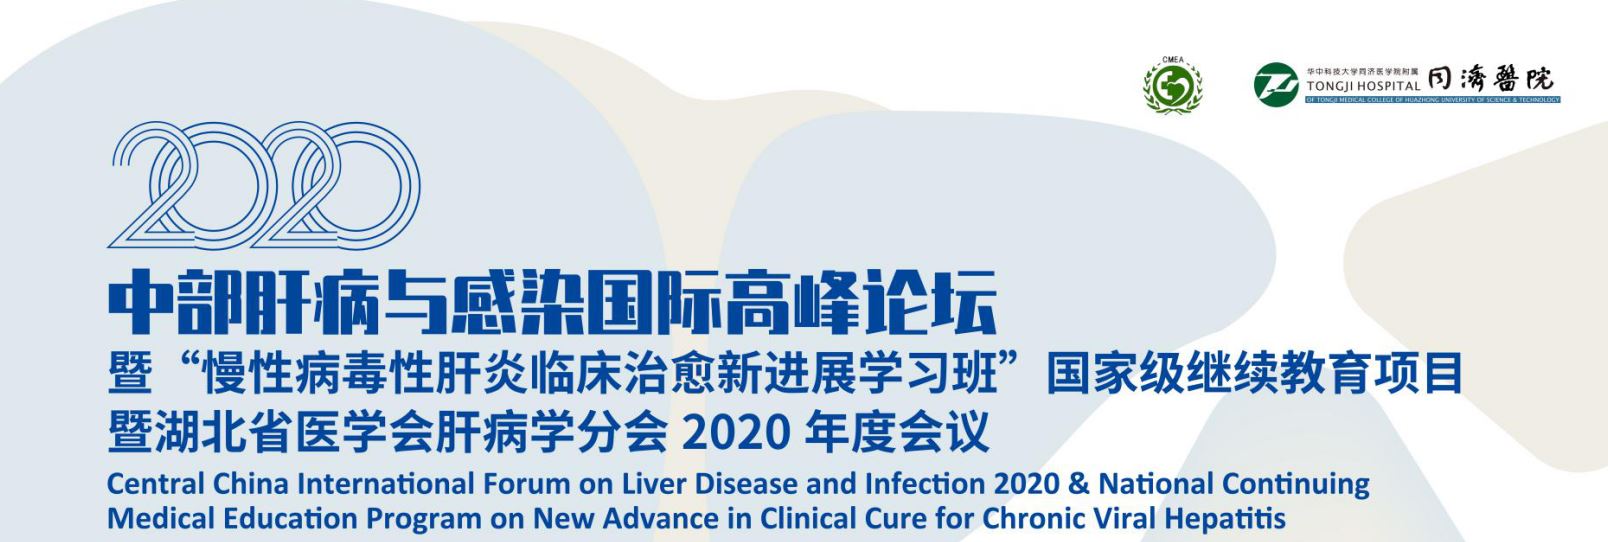 2020中部肝病与感染国际高峰论坛暨 “慢性病毒性肝炎临床治愈新进展学习班” 国家级继续教育项目